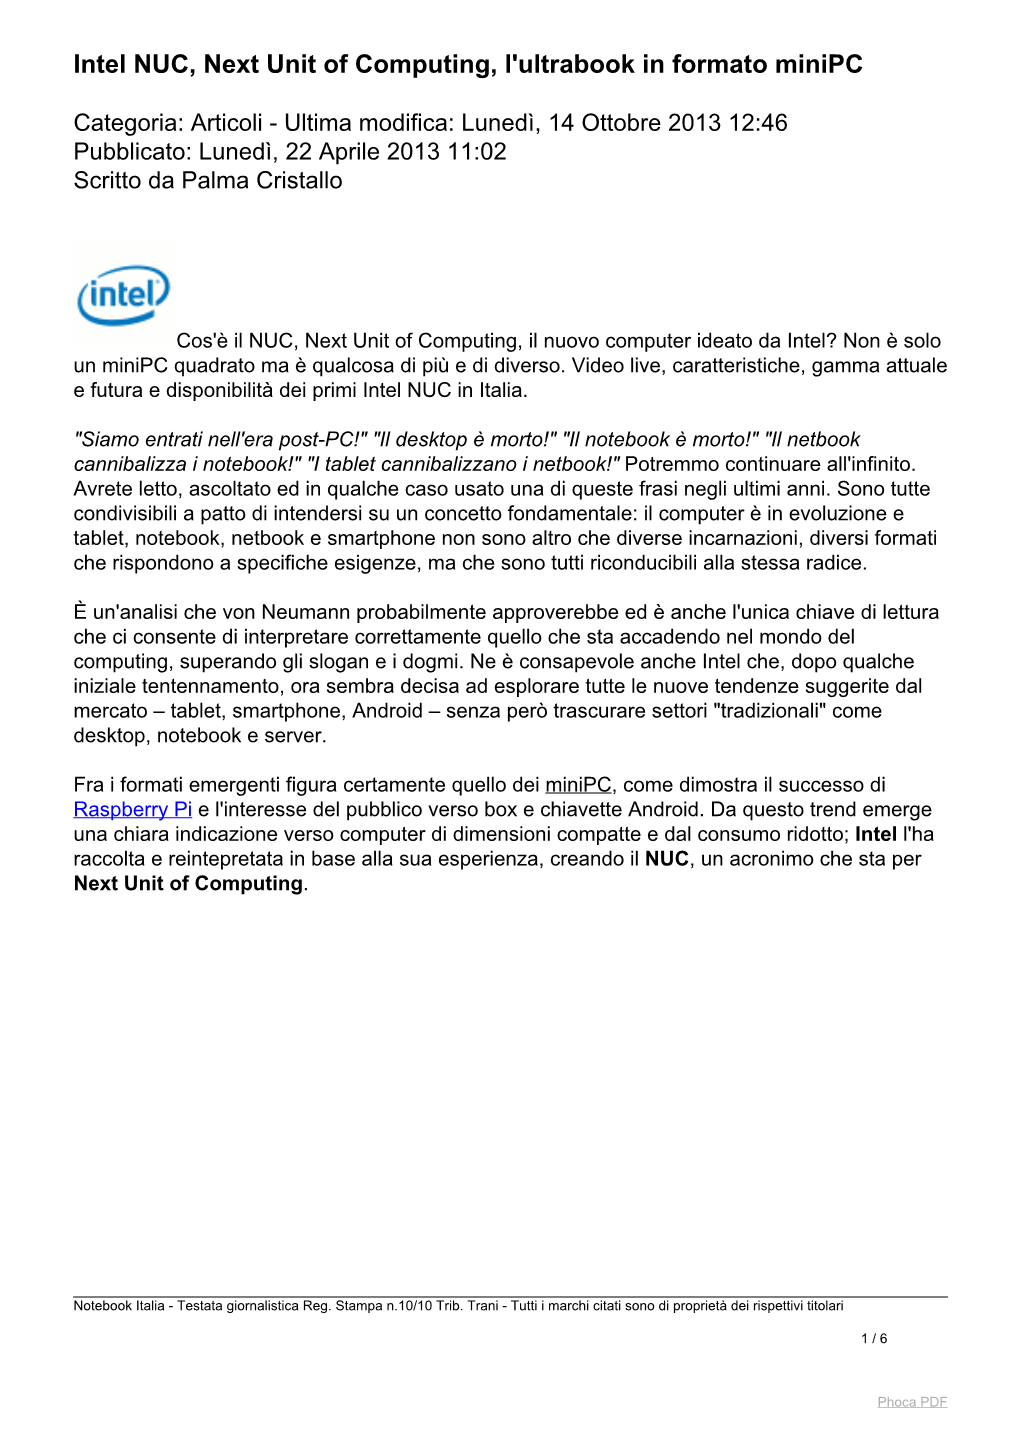 Intel NUC, Next Unit of Computing, L'ultrabook in Formato Minipc